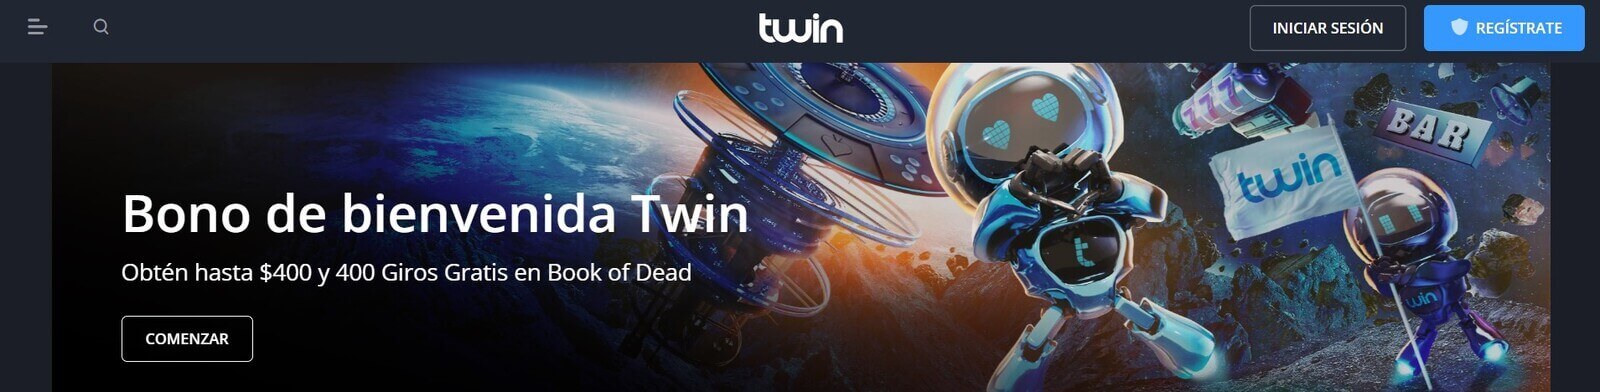 Página web de Twin Casino